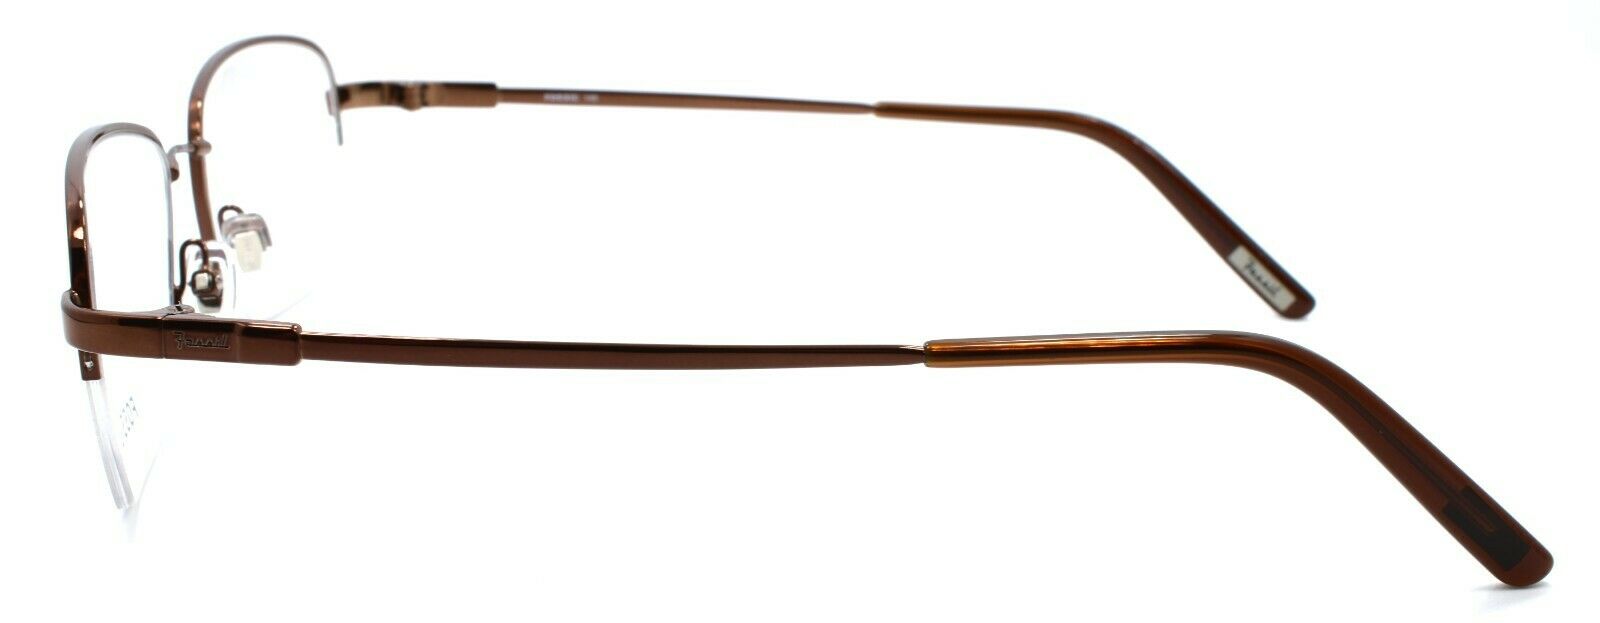 3-Fossil Trey 0TR2 Men's Eyeglasses Frames Half-rim Flexible 54-19-145 Dark Brown-780073973332-IKSpecs